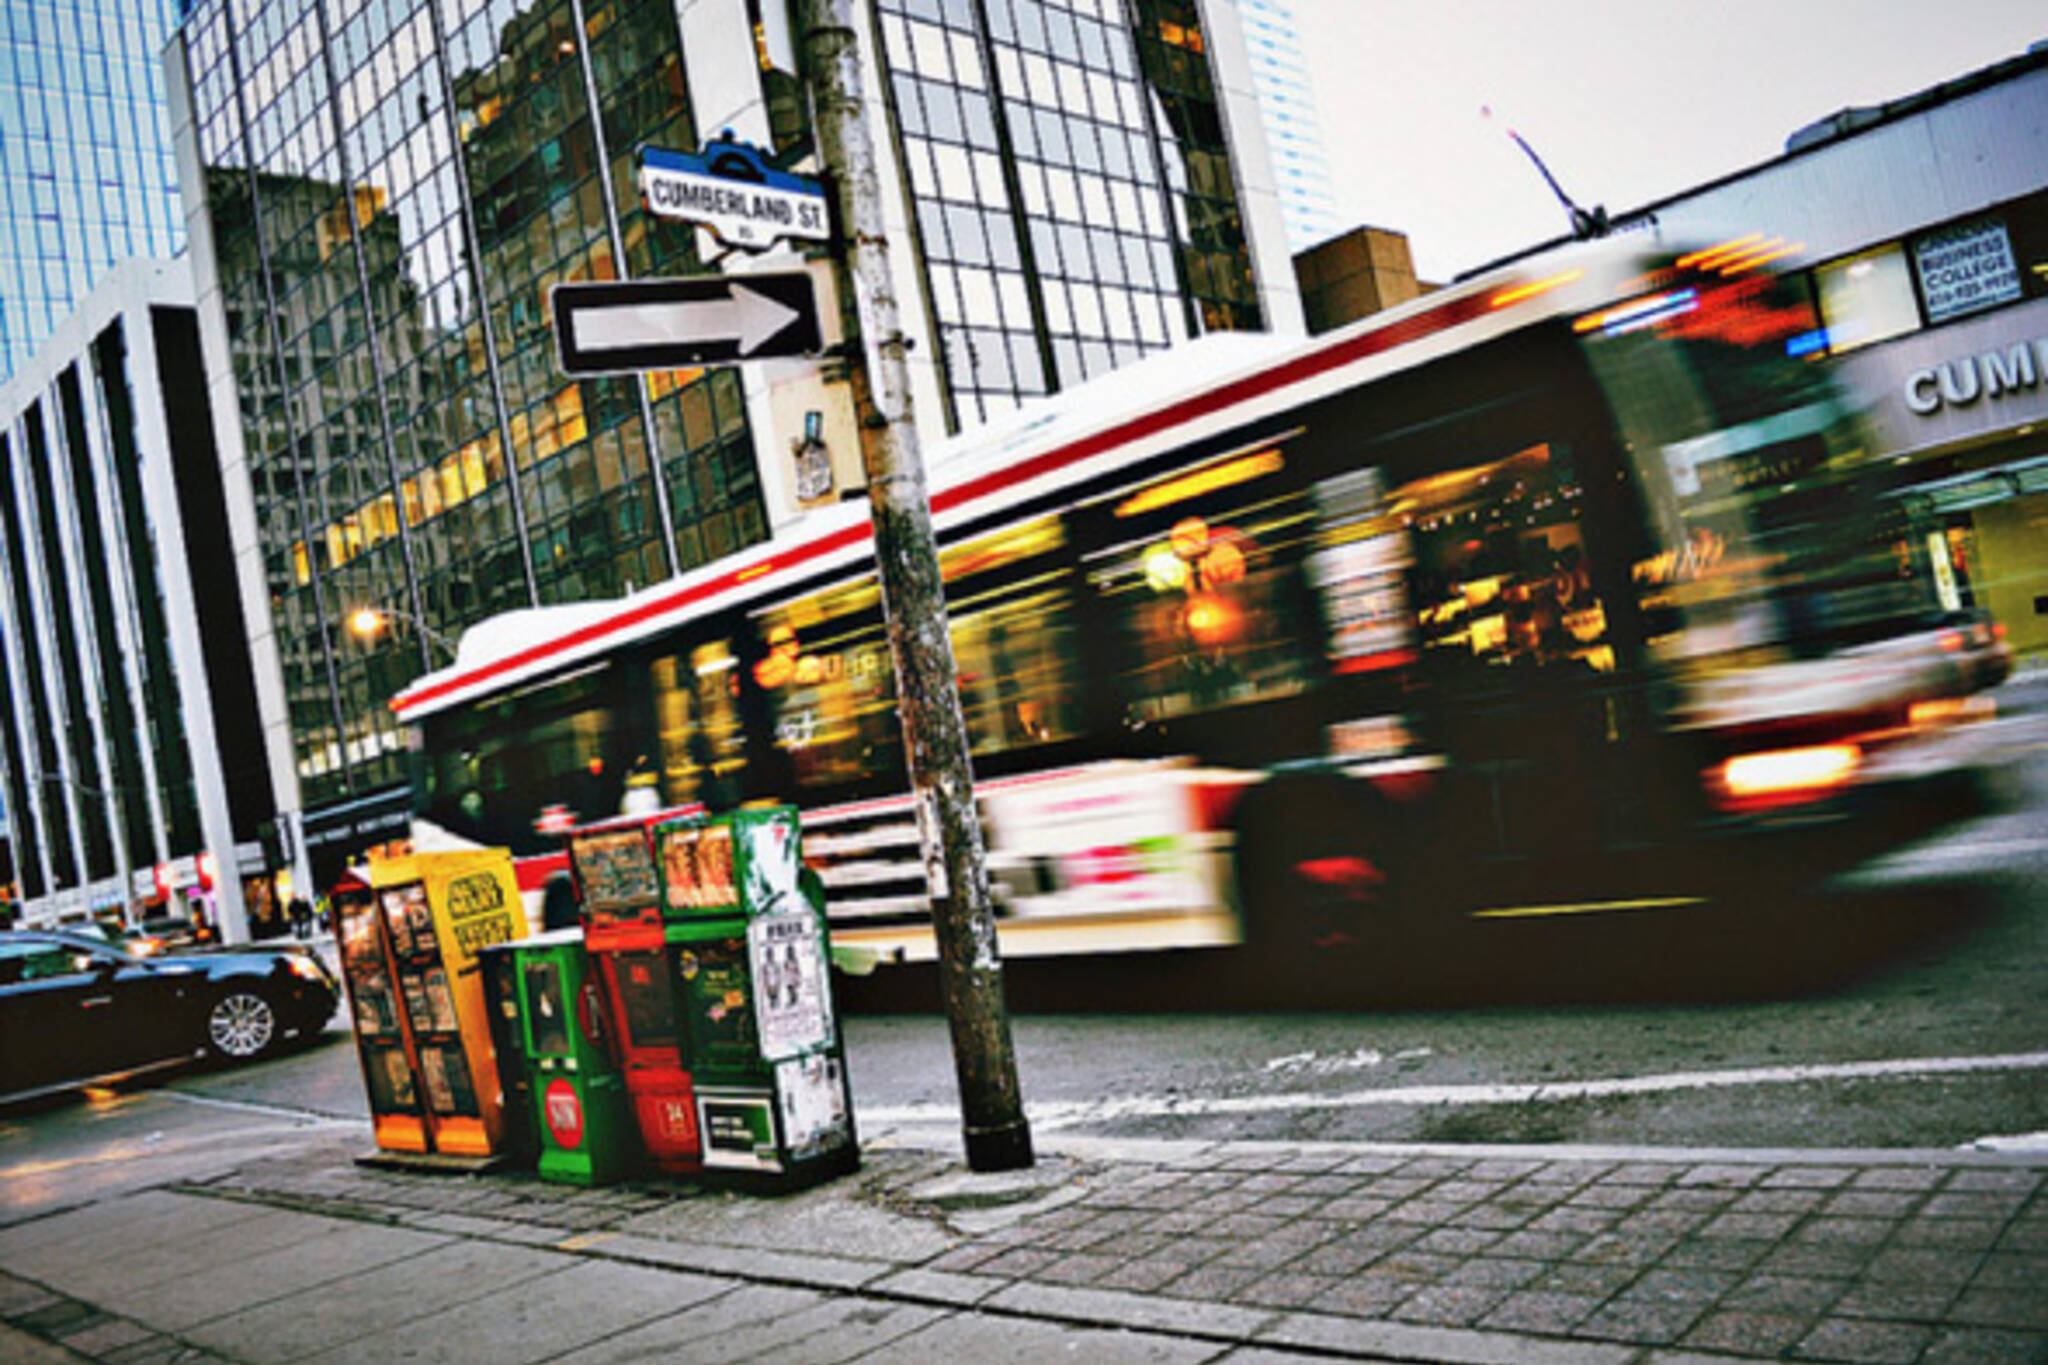 Toronto Bus